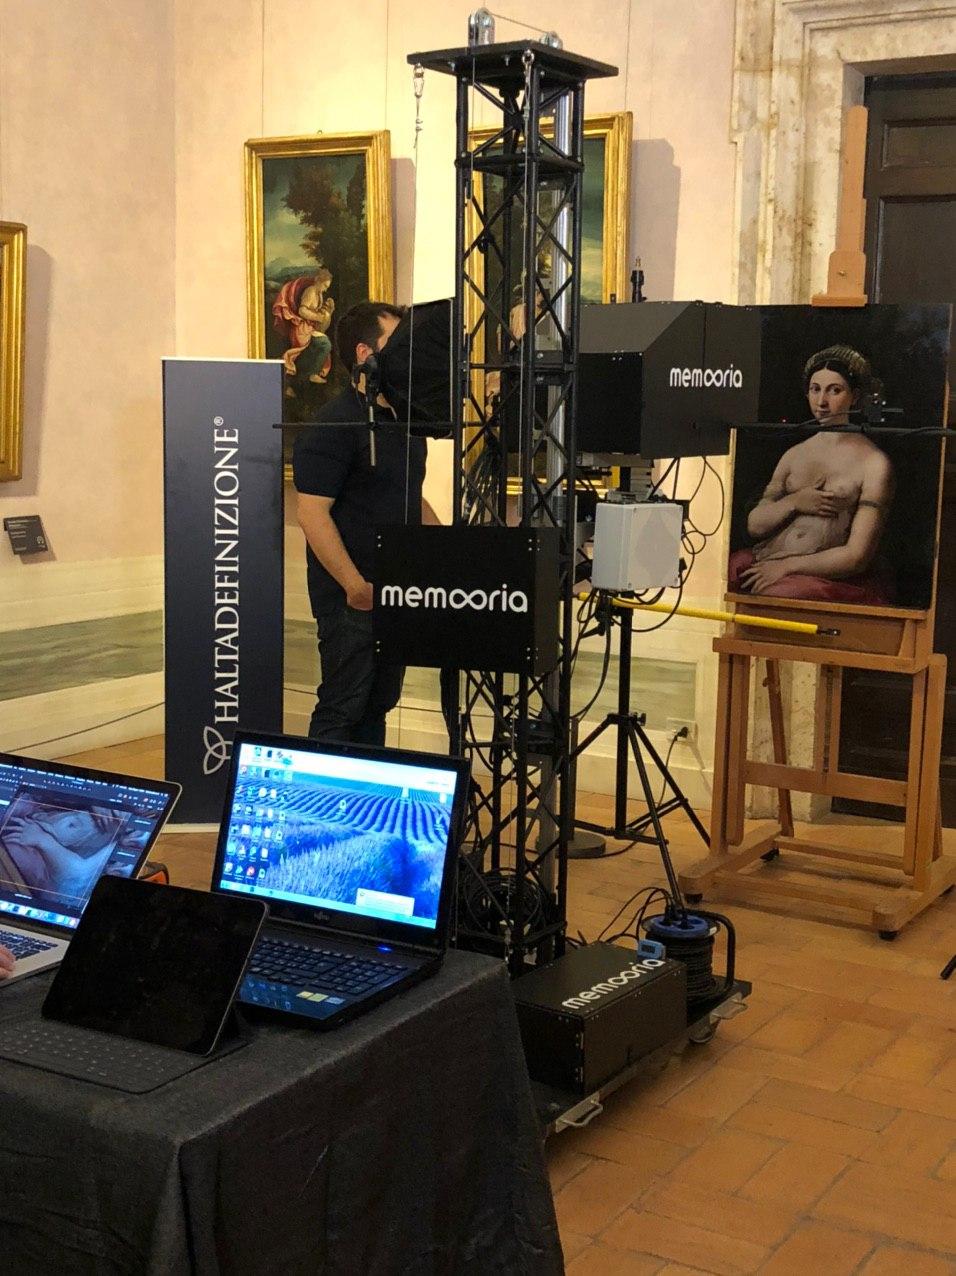 Aufnahme des Gemäldes "La Fornarina" von Raphael mit Hightech Ausrüstung, gigapixel, haltadefinizione, gemälde, digital, kunstwerk